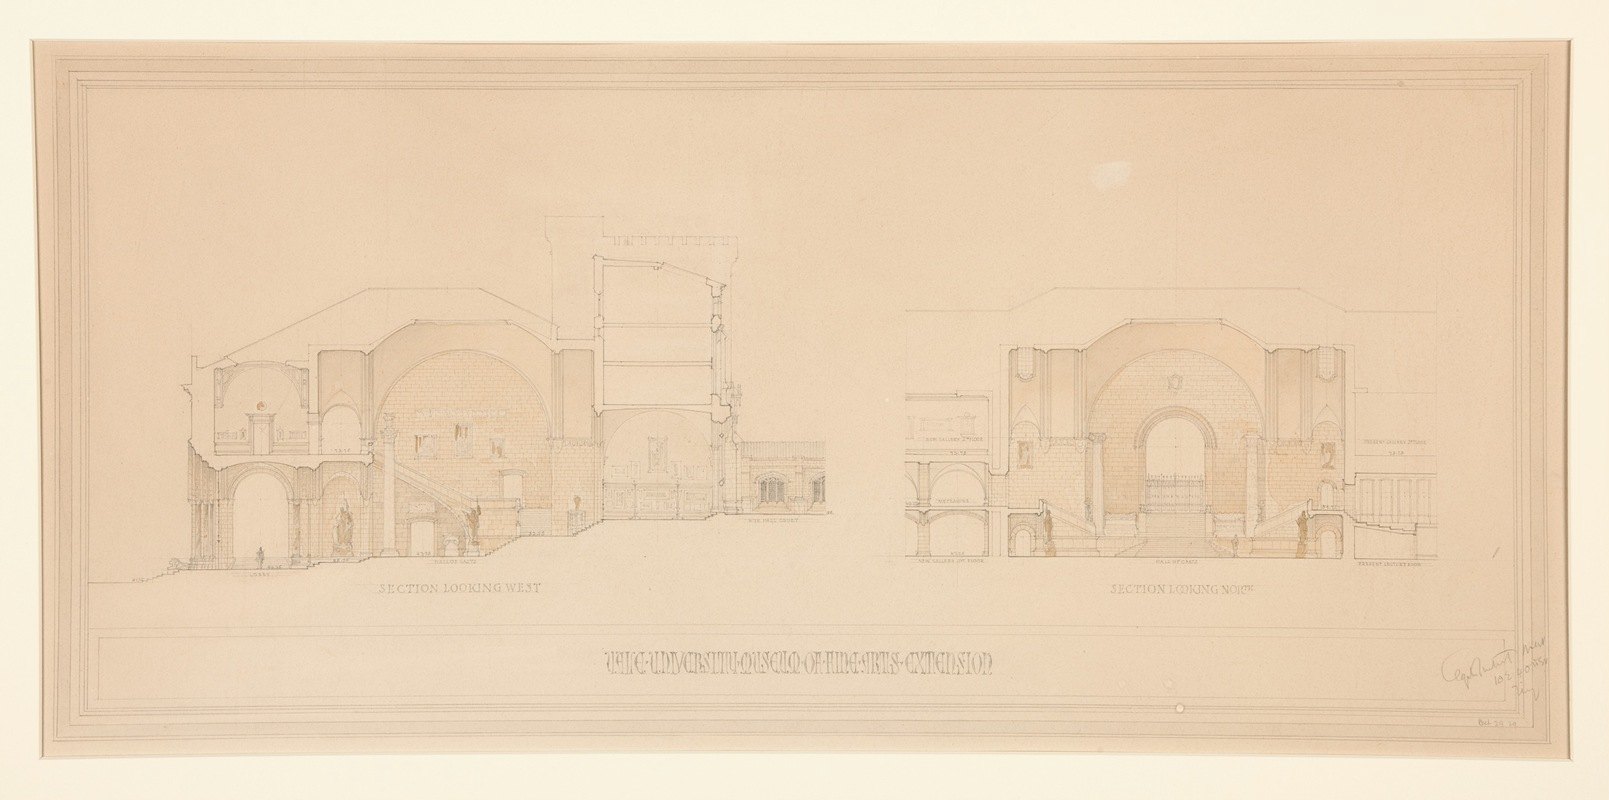 耶鲁大学美术馆扩建向西看的部分和向北看的部分`Yale University Museum of Fine Arts Extension; Section Looking West and Section Looking North (1929) by Egerton Swartwout